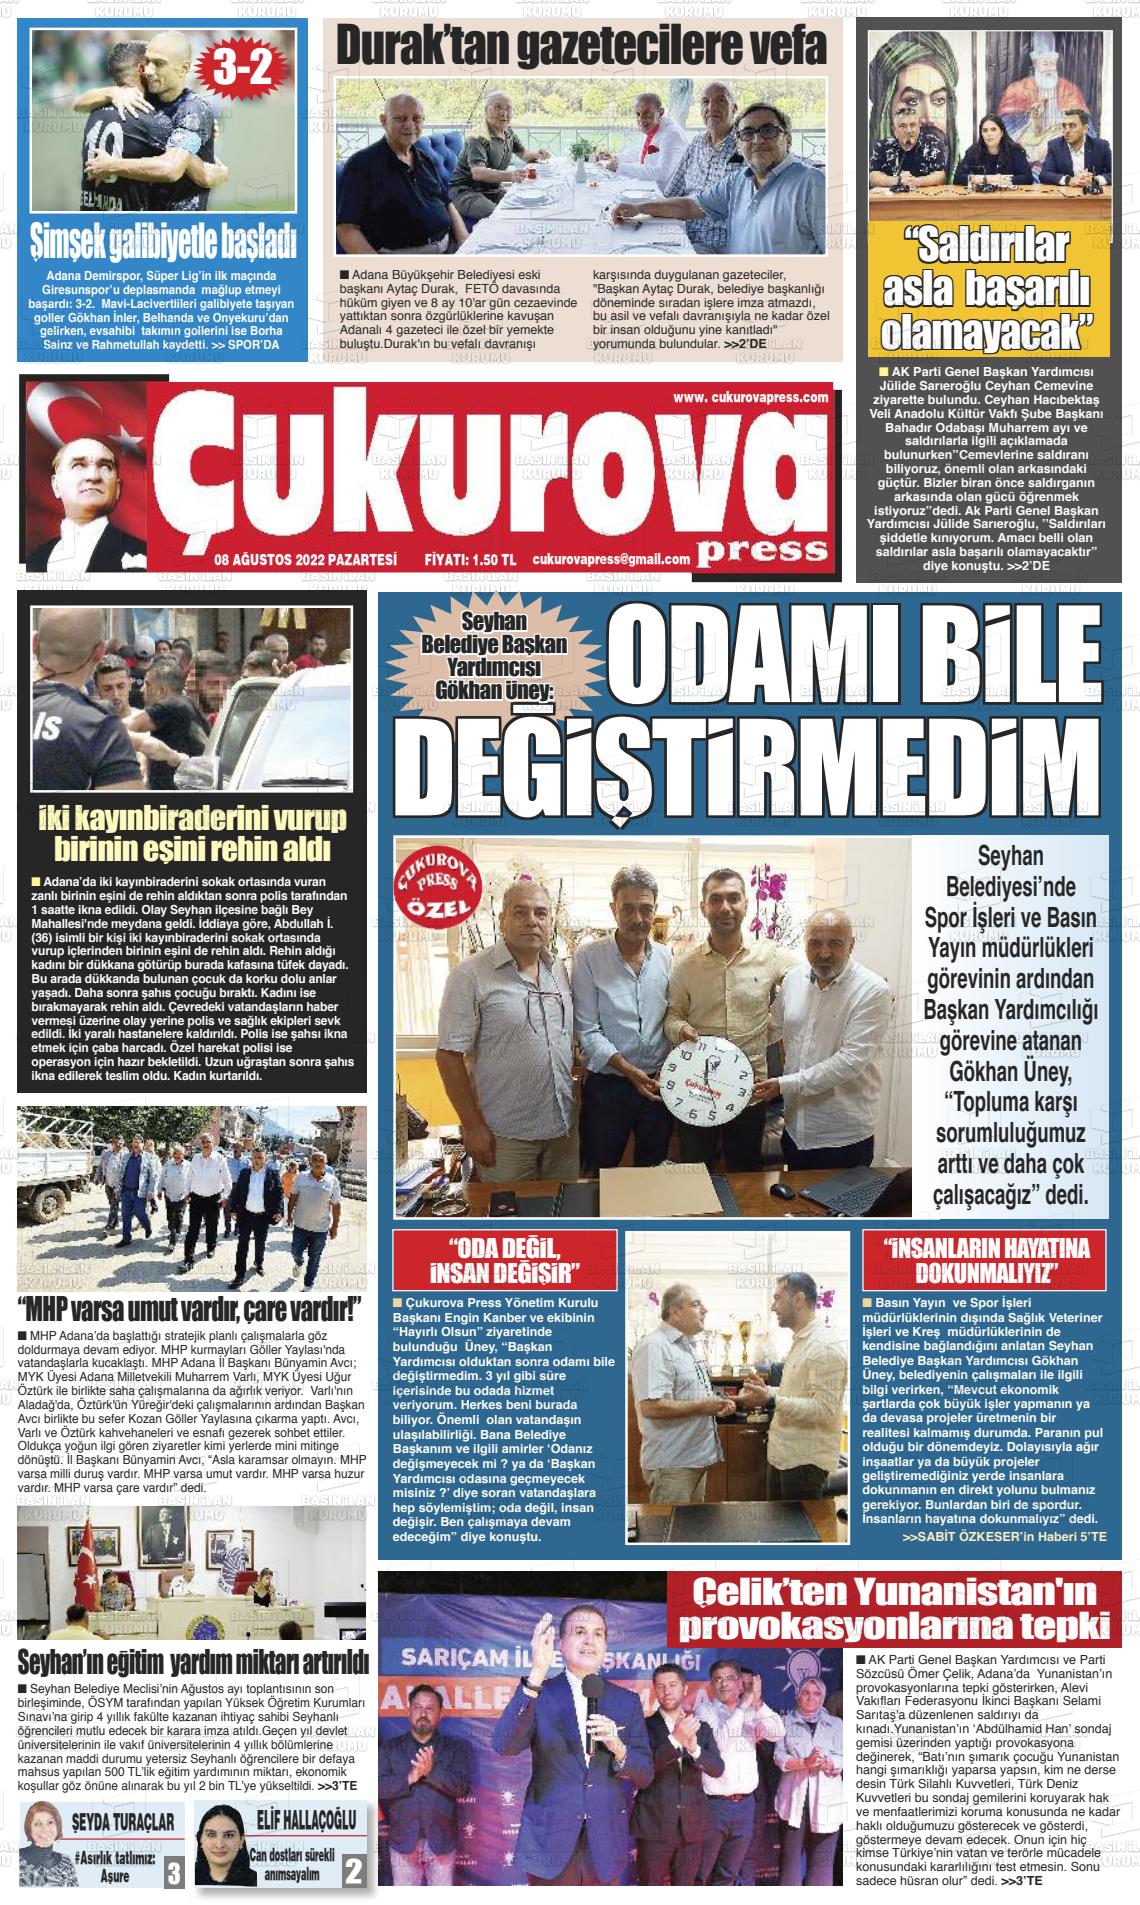 08 Ağustos 2022 Çukurova Press Gazete Manşeti